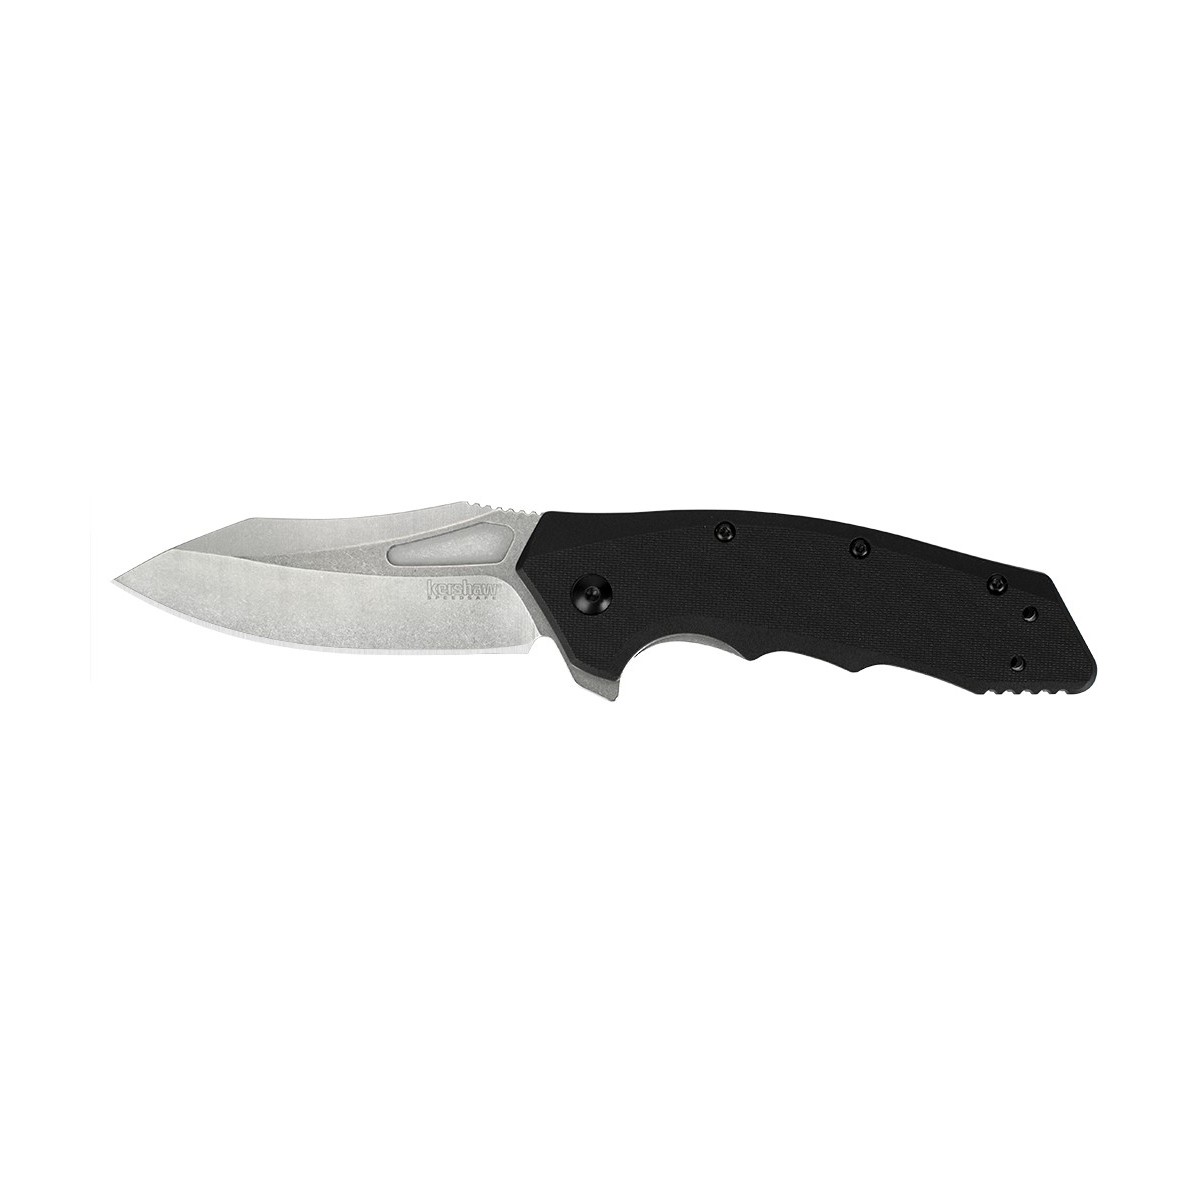 มีดพับ Kershaw Flitch Assisted Opening Knife Black GFN (3.25" Stonewash) 3930